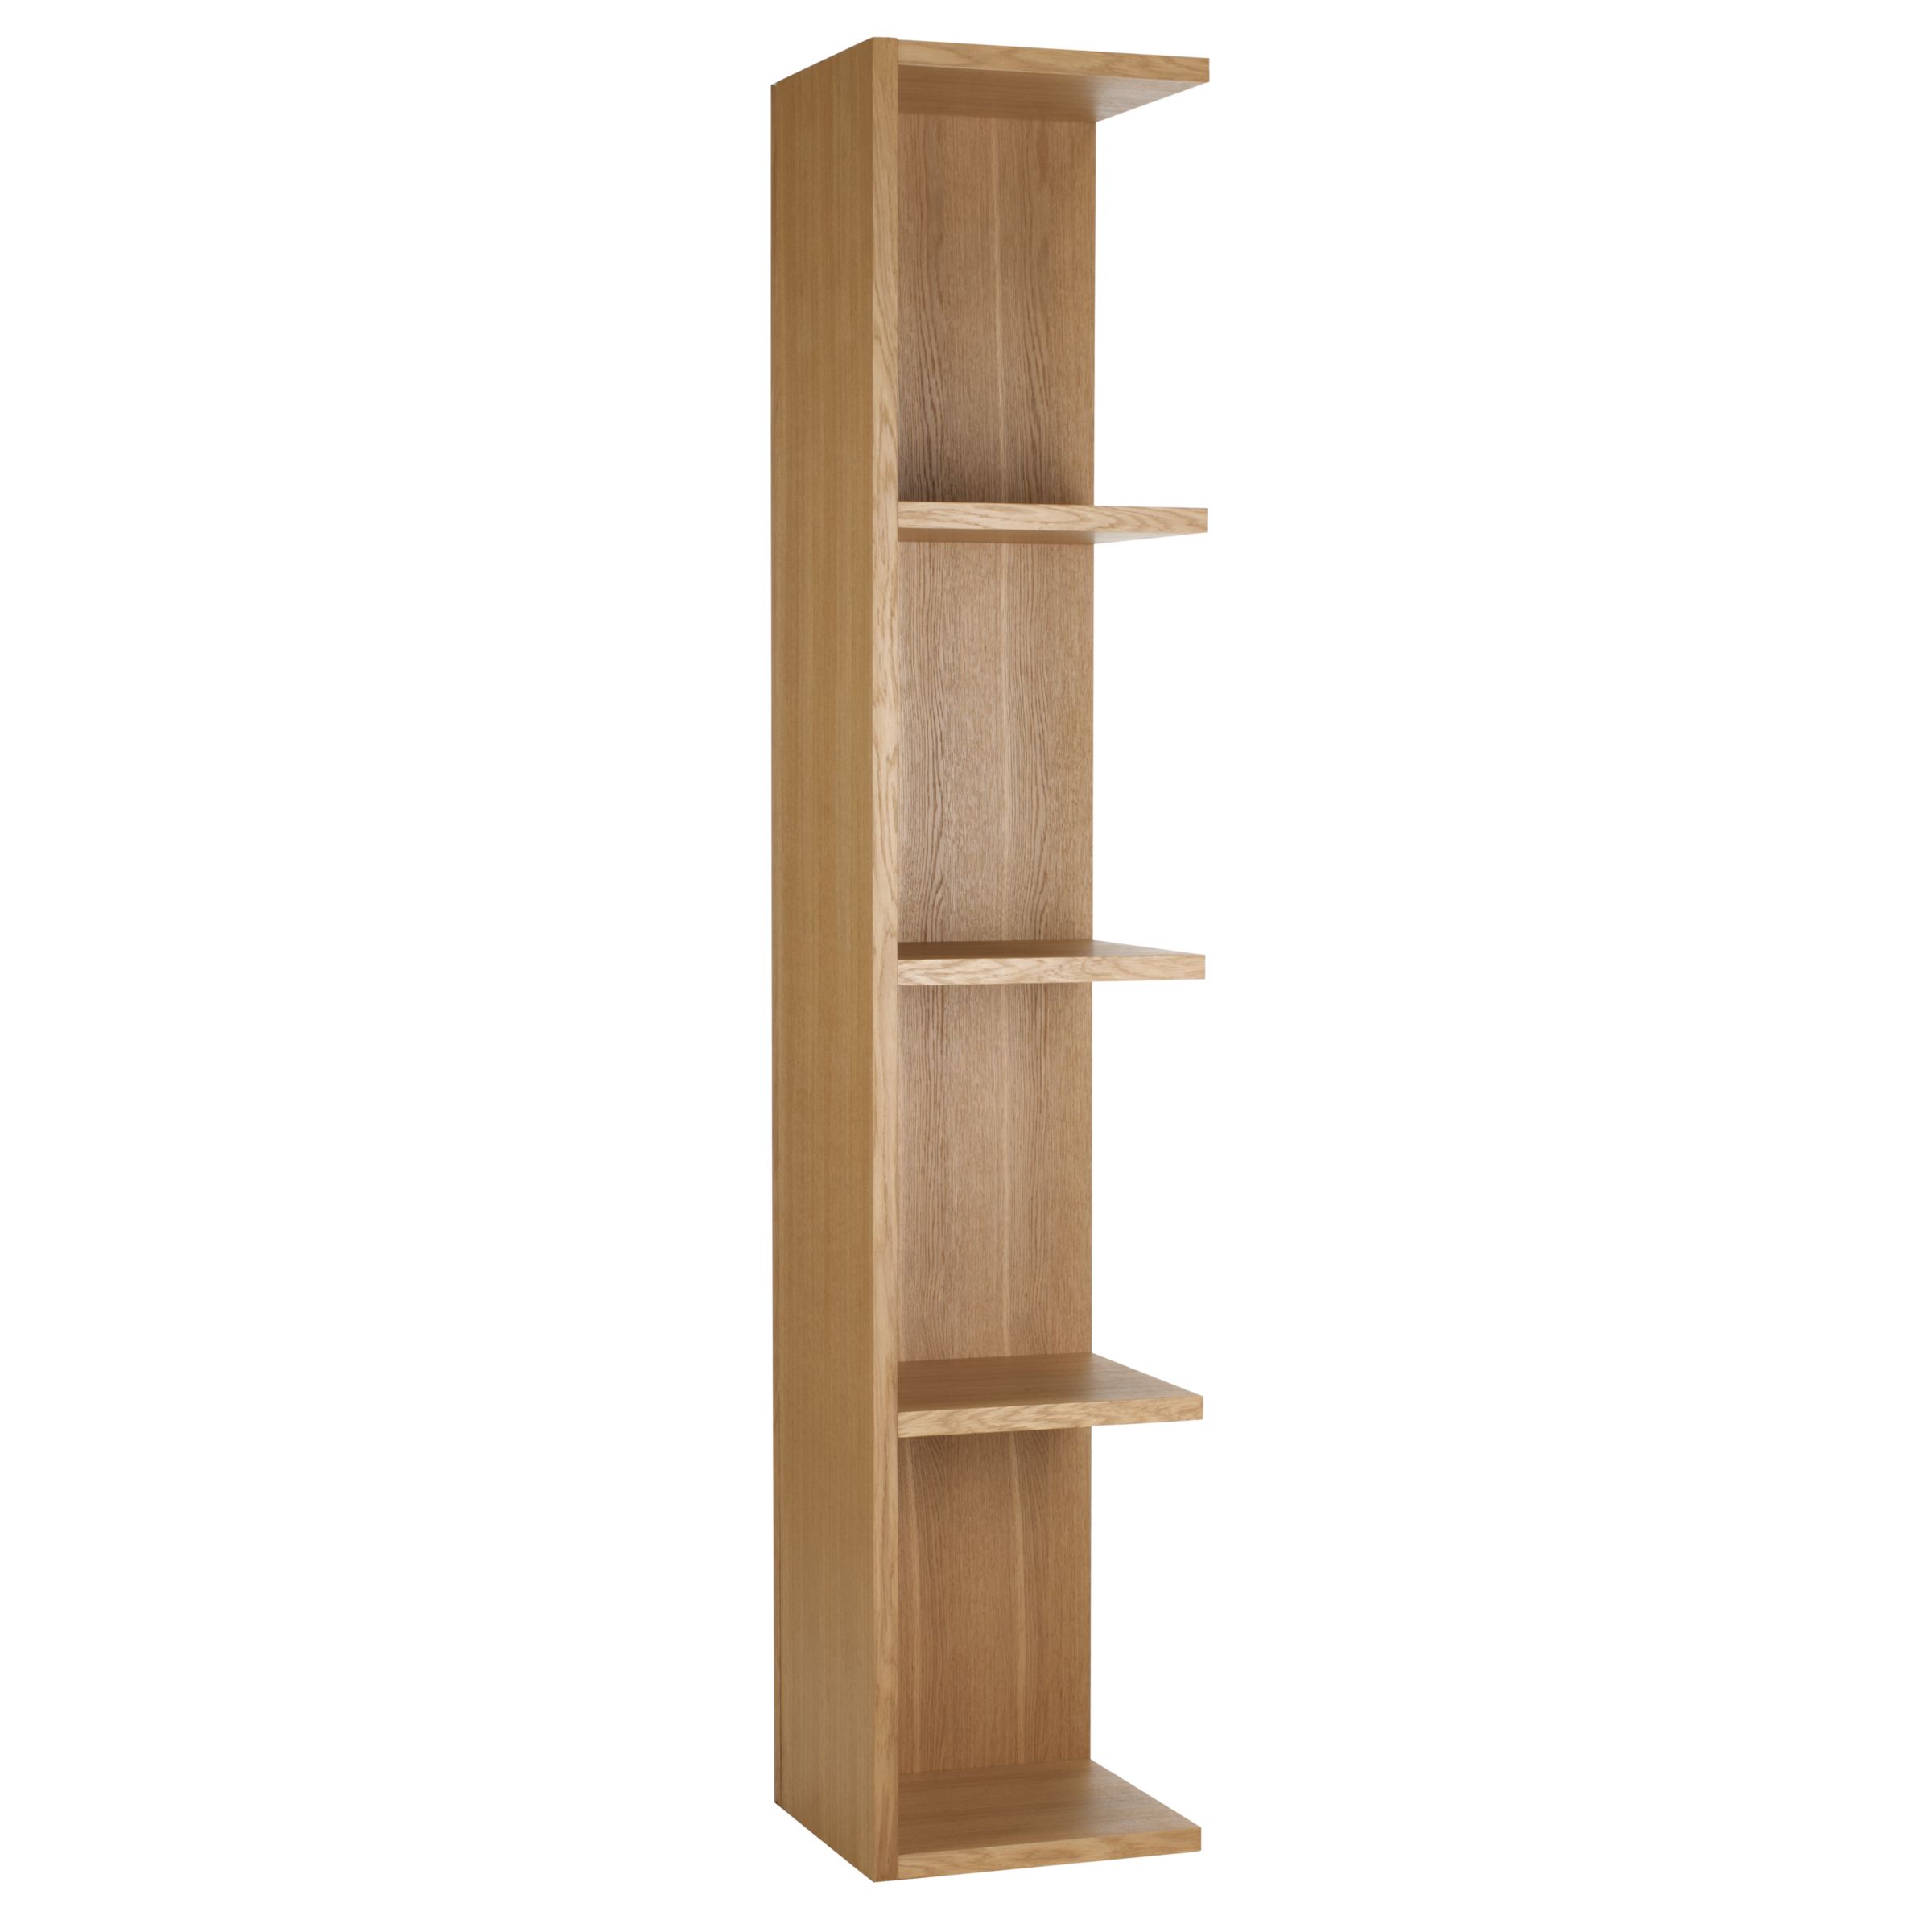 Content by Conran Angle Tall Bookcase, 3 Shelf,